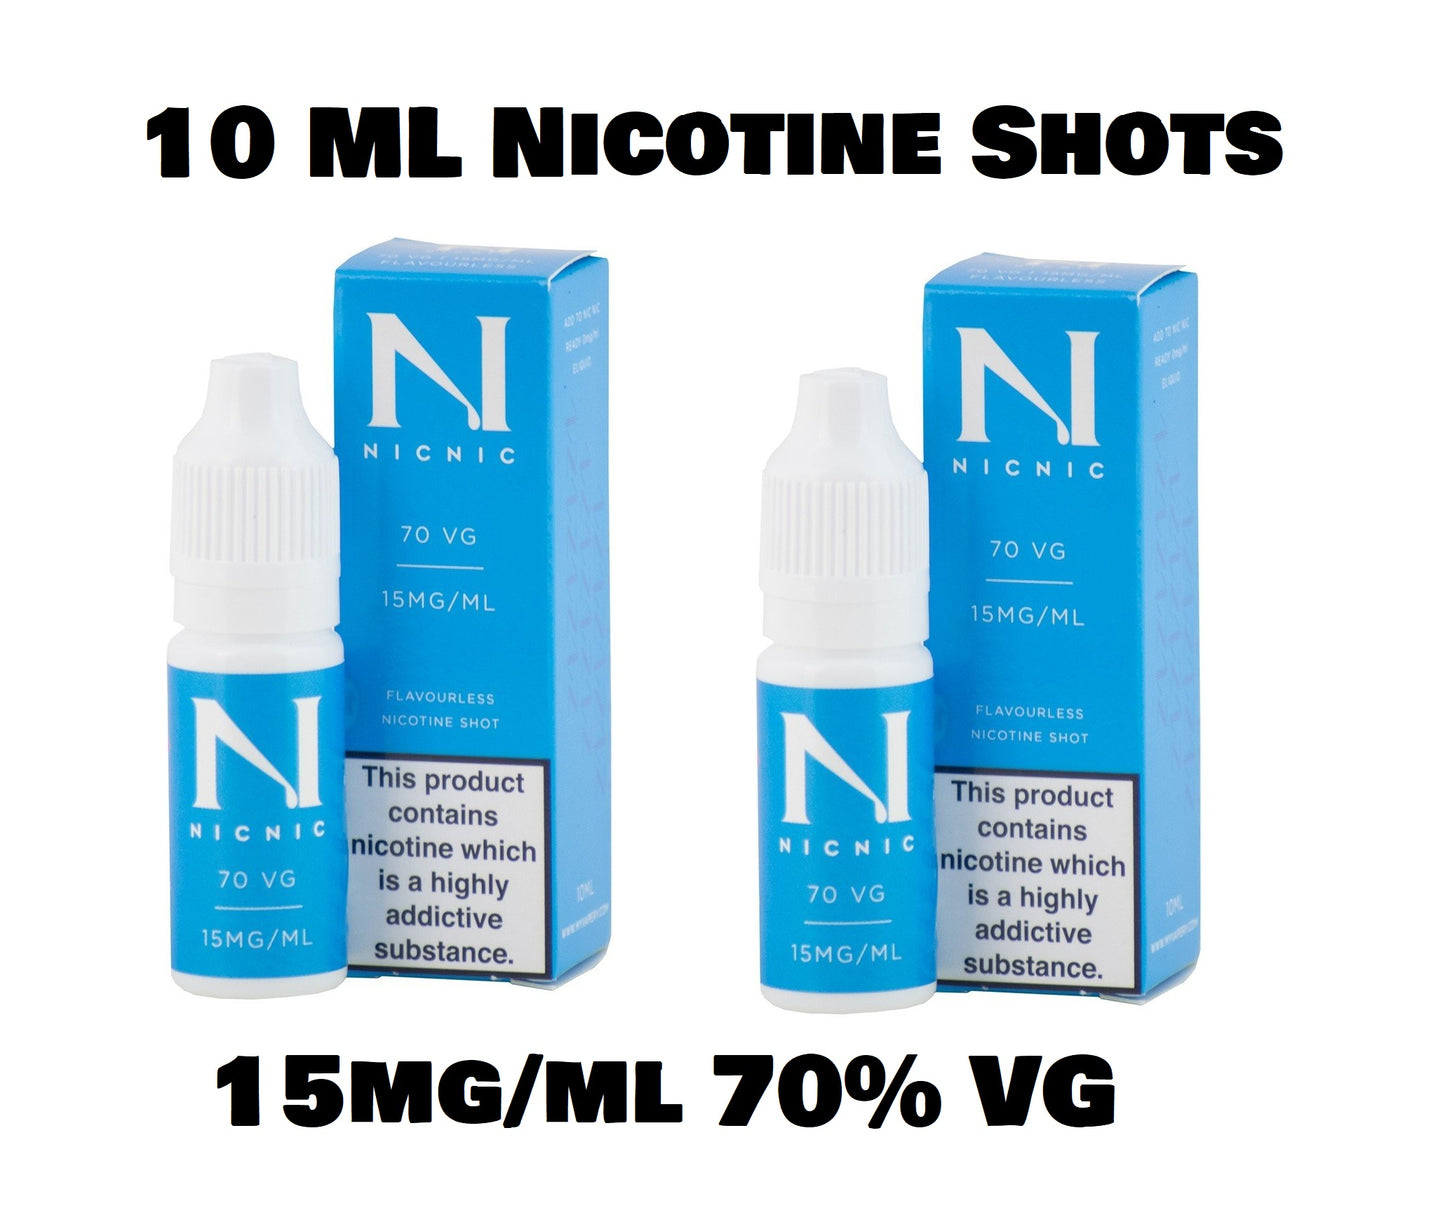 Nicotine Shots by NicNic - 15mg Nic Shot 70VG